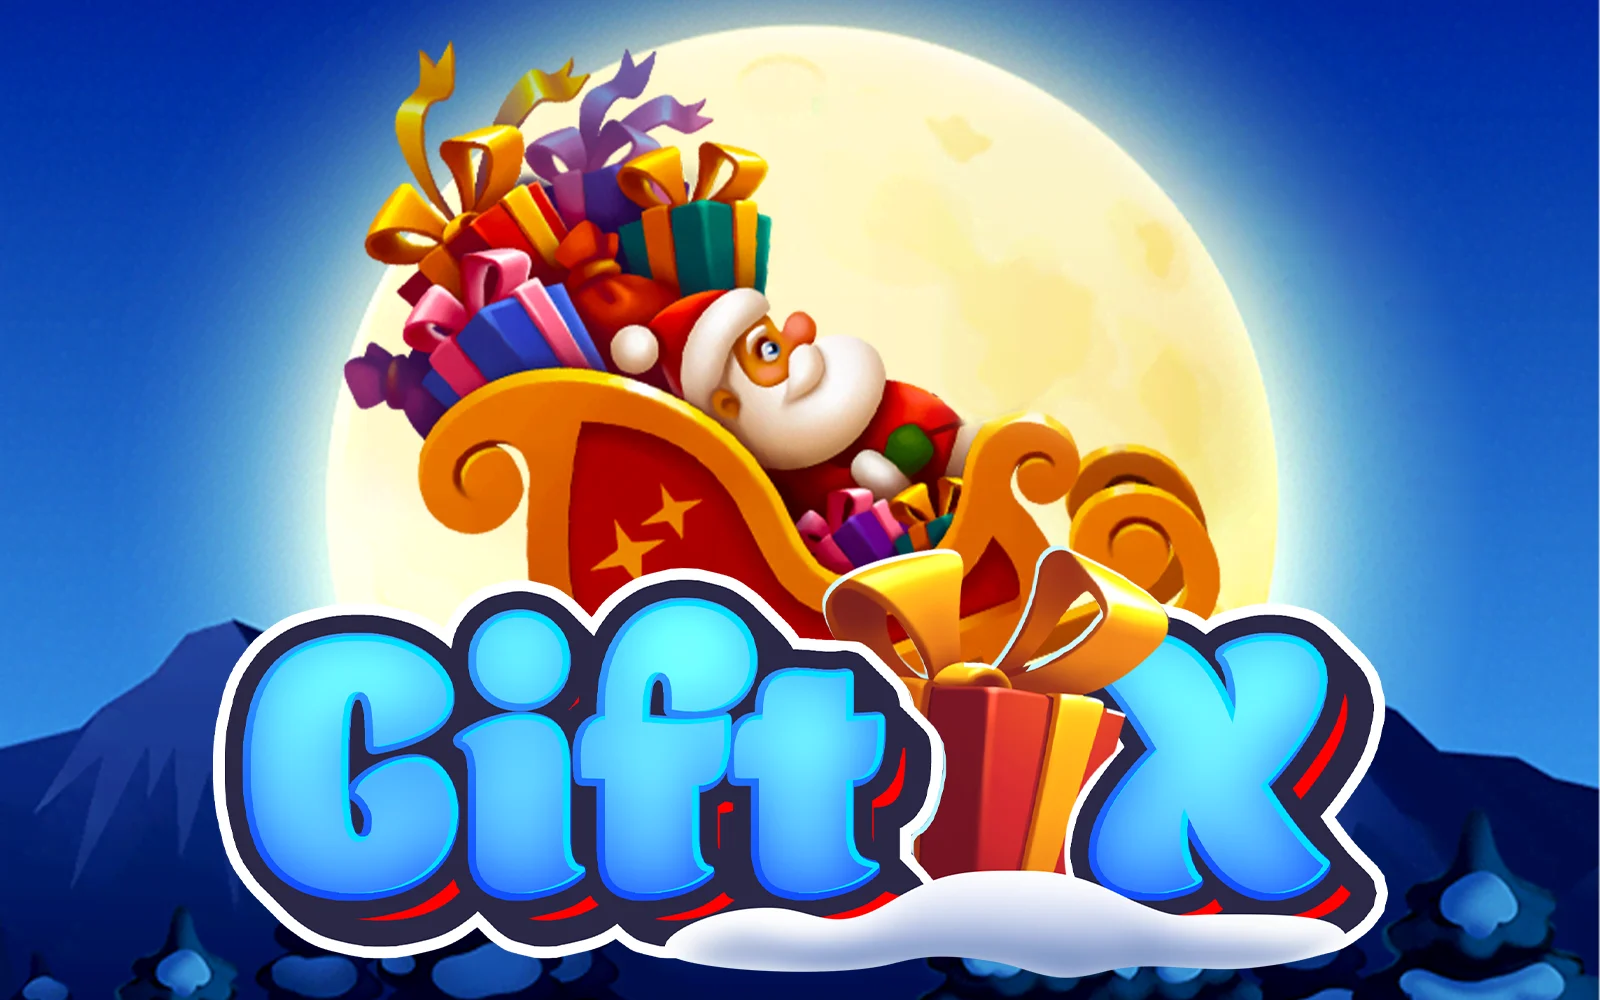 Play Gift X on Starcasino.be online casino